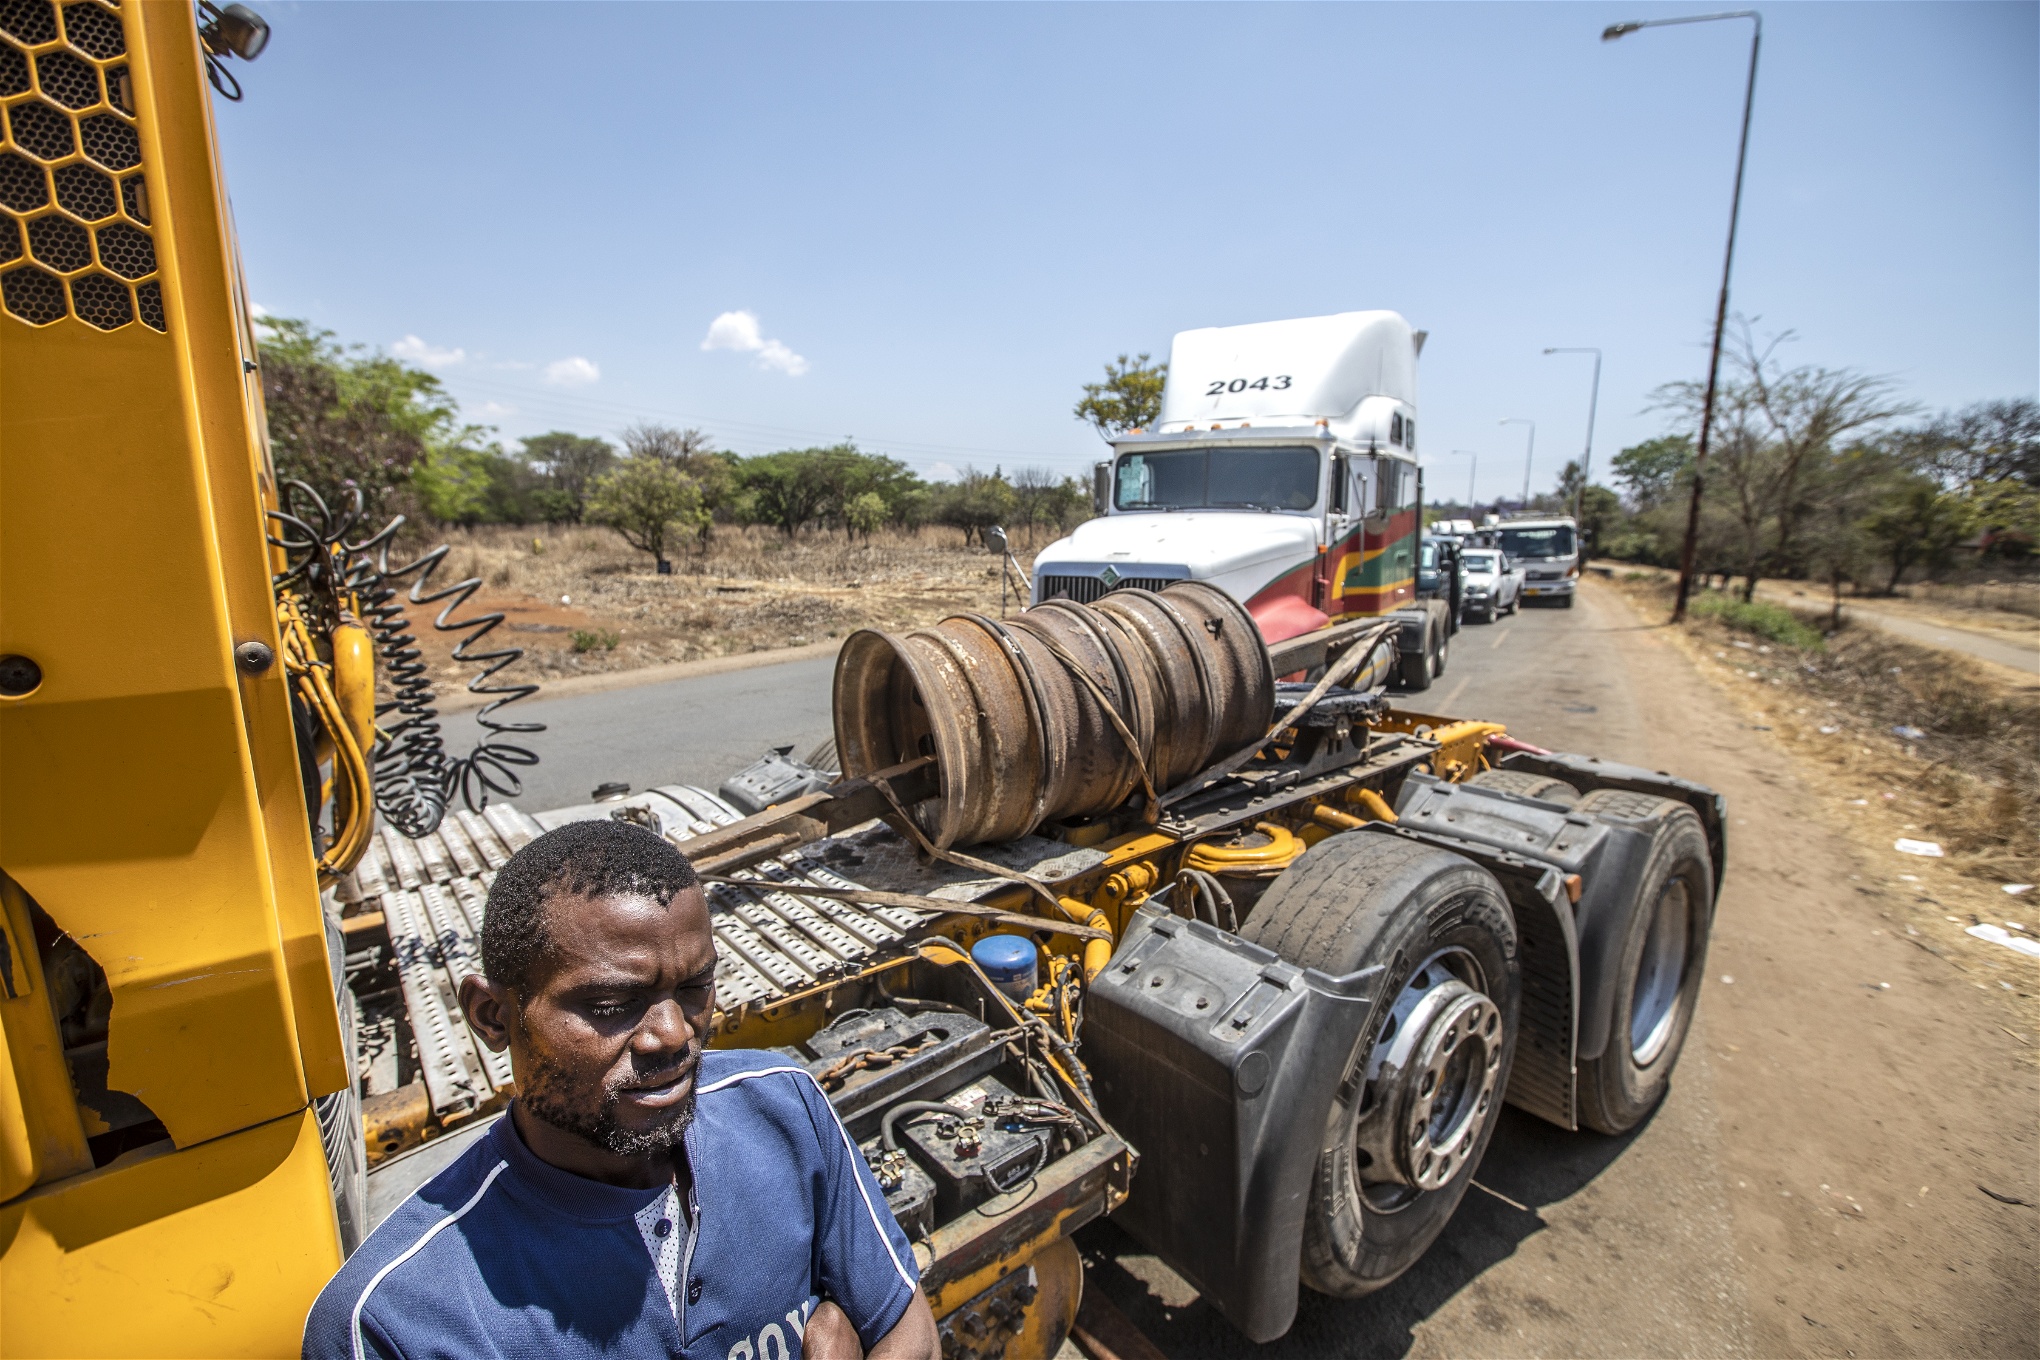 Ända sedan början av 2019 har bensinköerna ringlat långa i Zimbabwe. Stationerna får bara in bränsle någon gång ibland. Långtradarchauffören Eusapai Dumbaza har väntat i tre dagar i kön och det påverkar hans möjligheter till försörjning. Körningen till kuststaden Beira i Moçambique får vänta. 